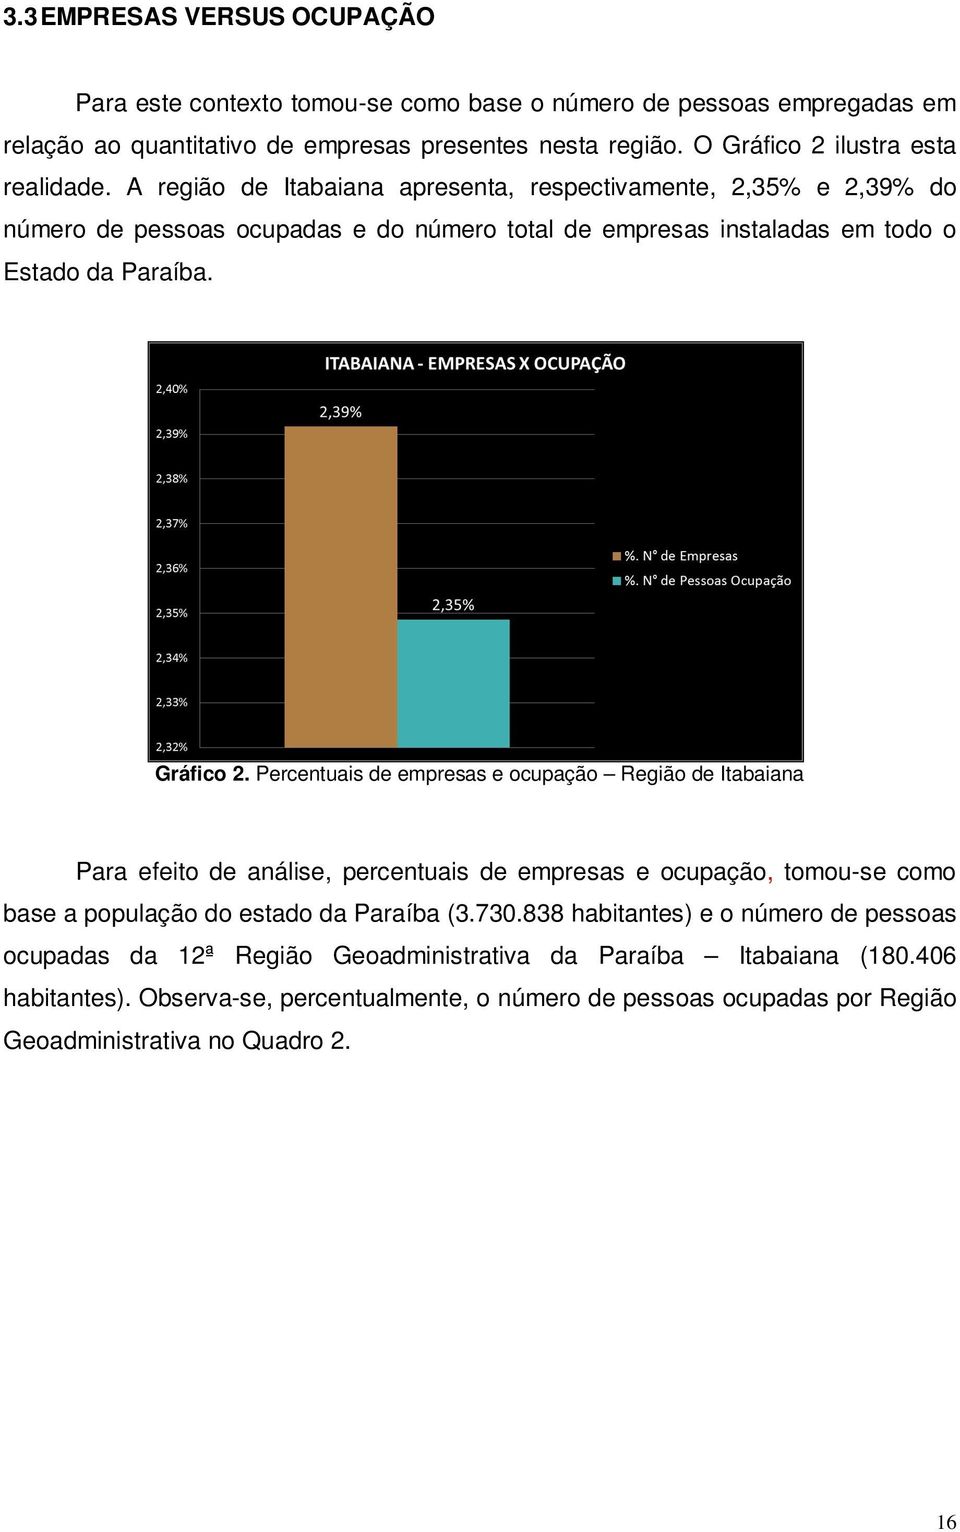 A região de Itabaiana apresenta, respectivamente, 2,35% e 2,39% do número de pessoas ocupadas e do número total de empresas instaladas em todo o Estado da Paraíba. Gráfico 2.